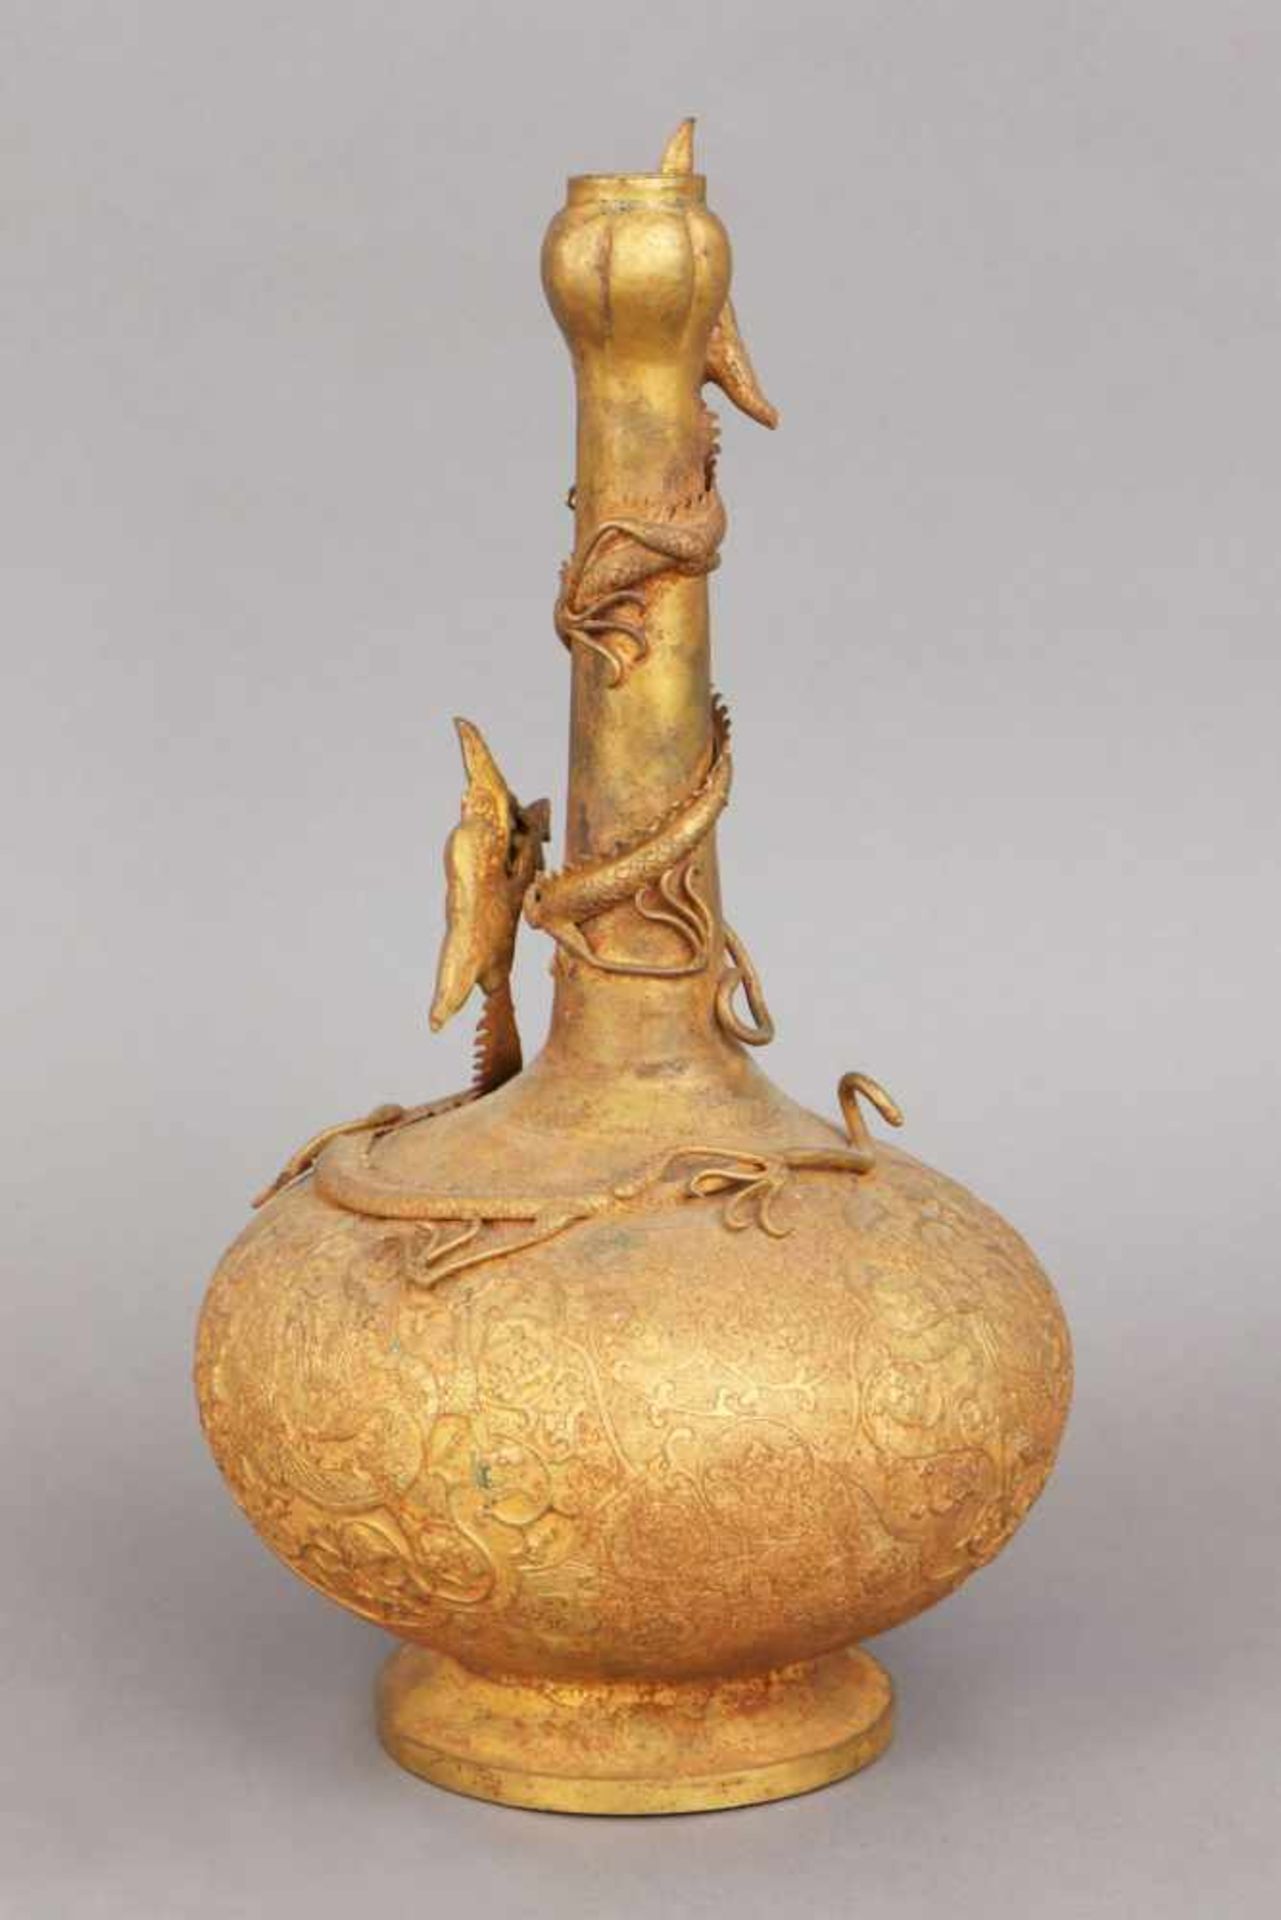 Chinesisches VasengefäßMetall (wohl Bronze und Blech), vergoldet, Alter unbestimmt, bauchiger Korpus - Bild 2 aus 2